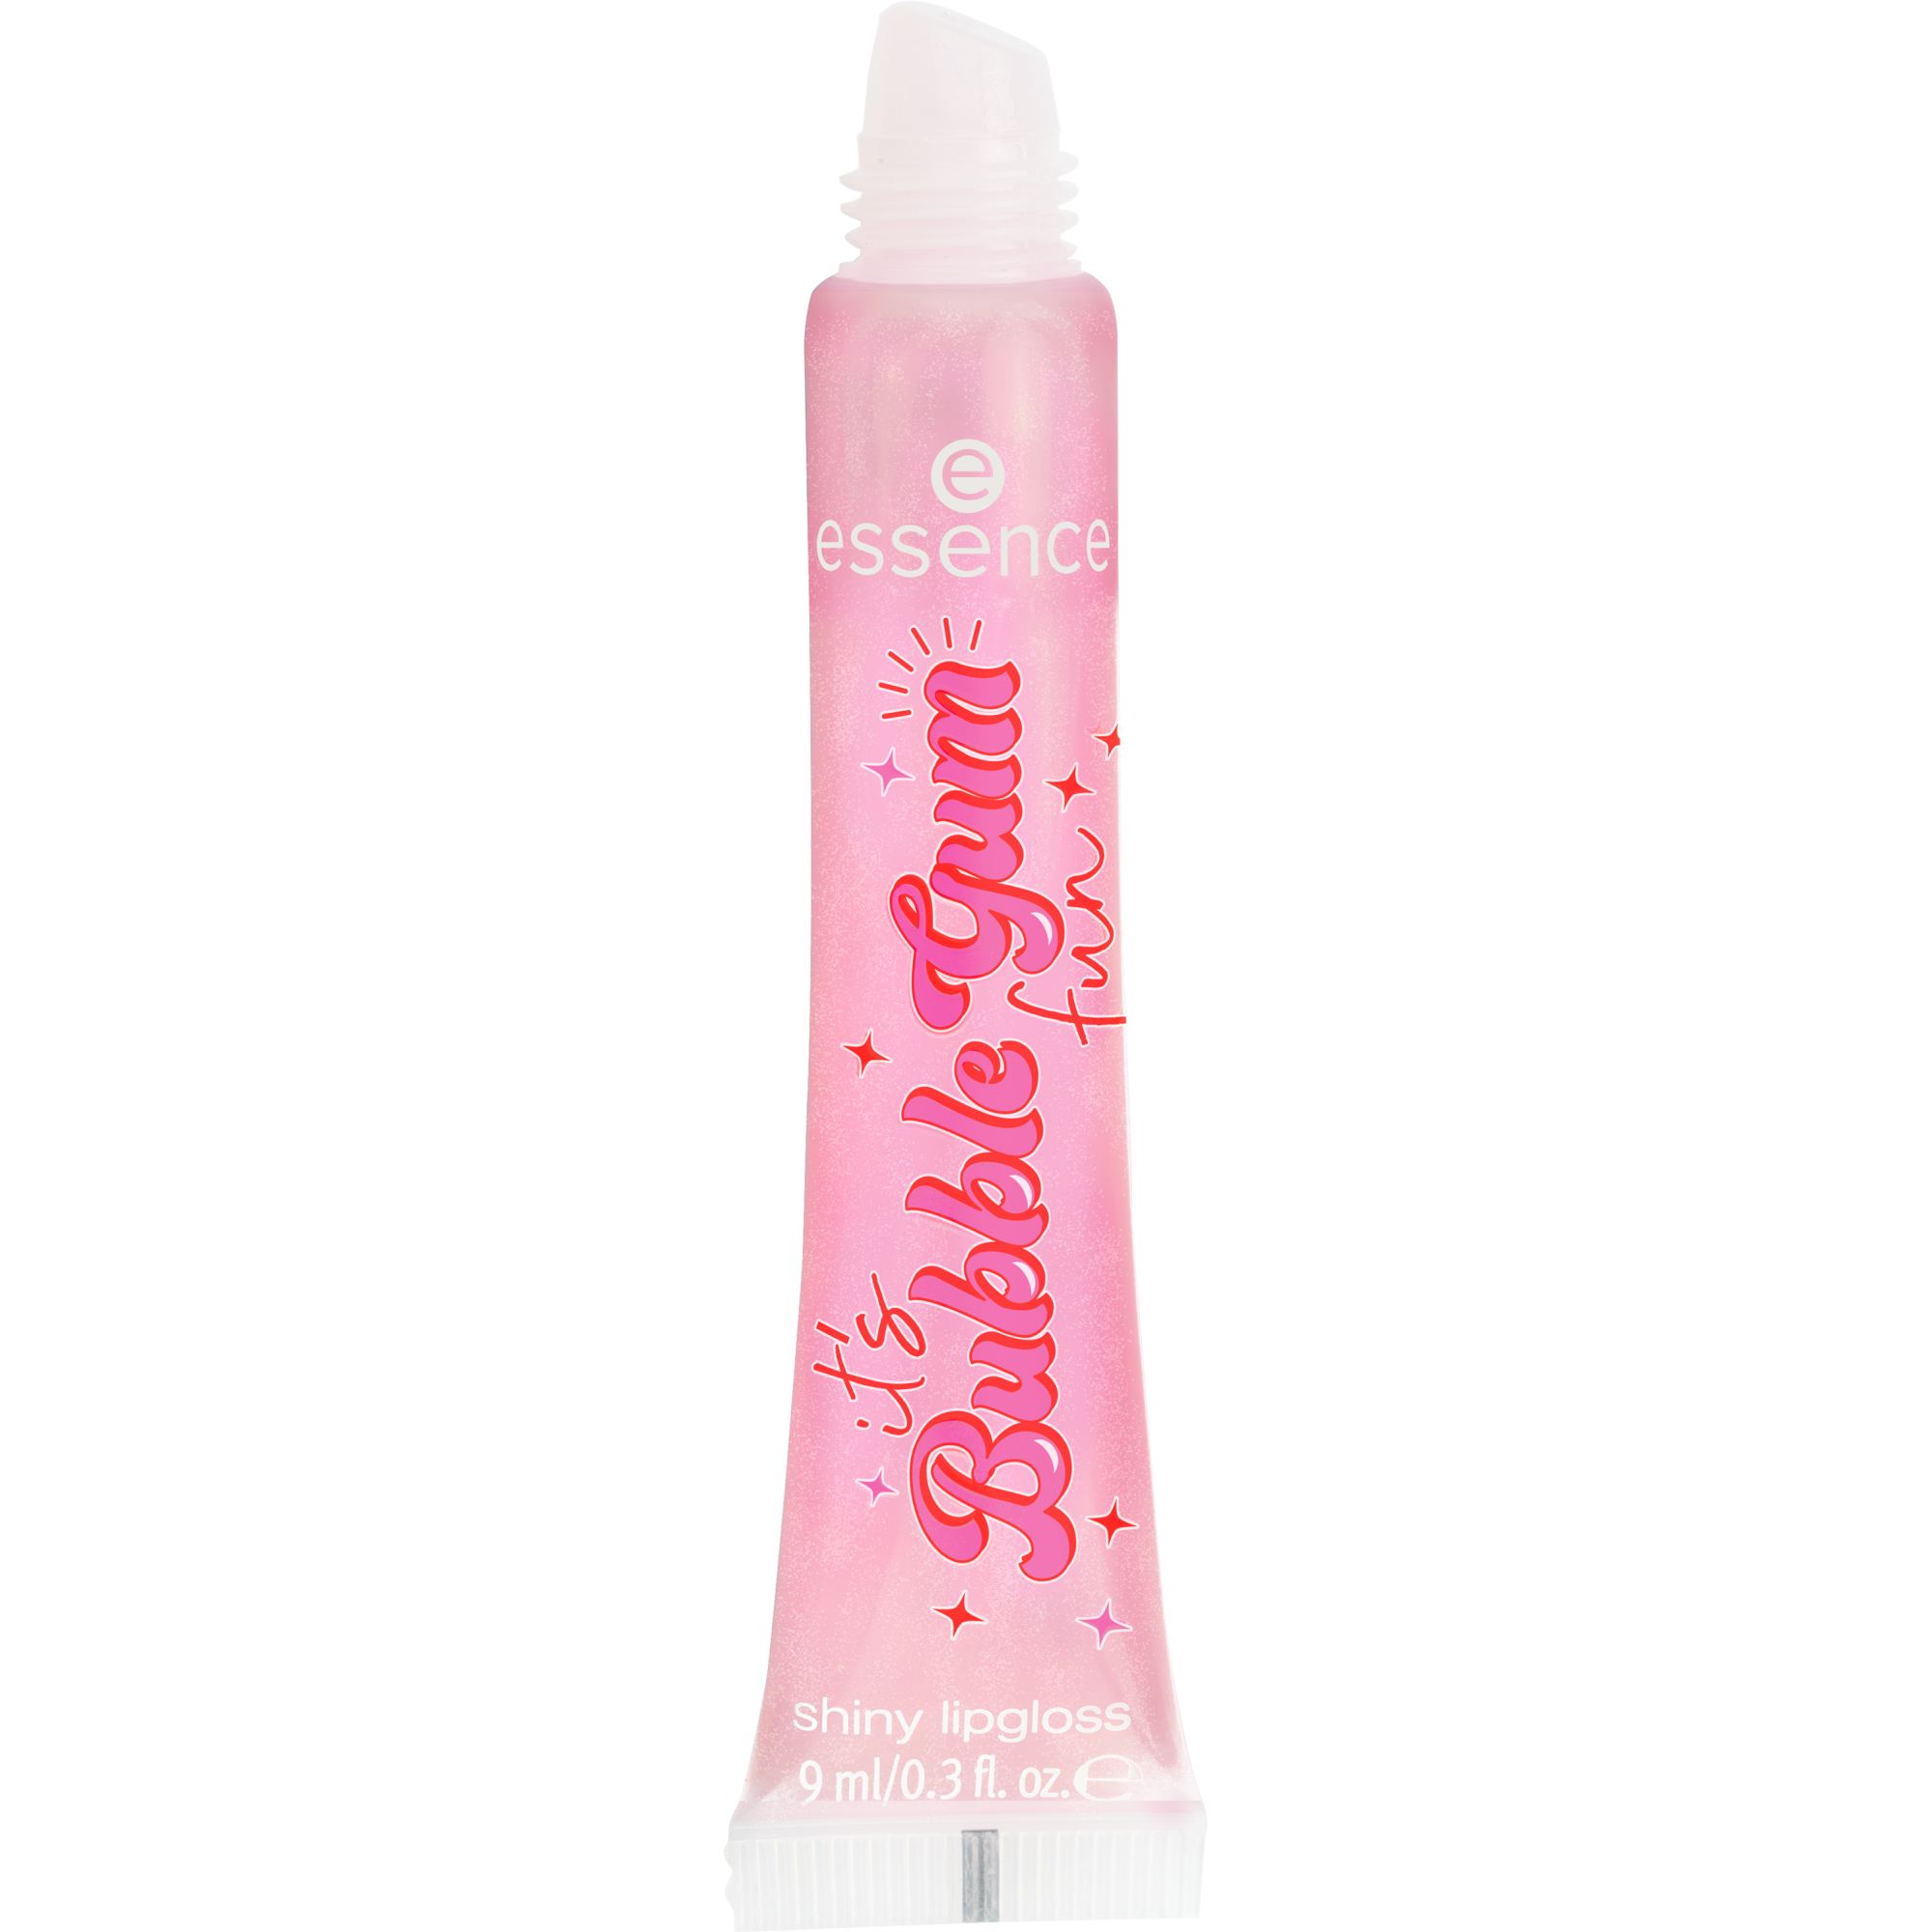 it’s Bubble Gum fun glanzende lipgloss